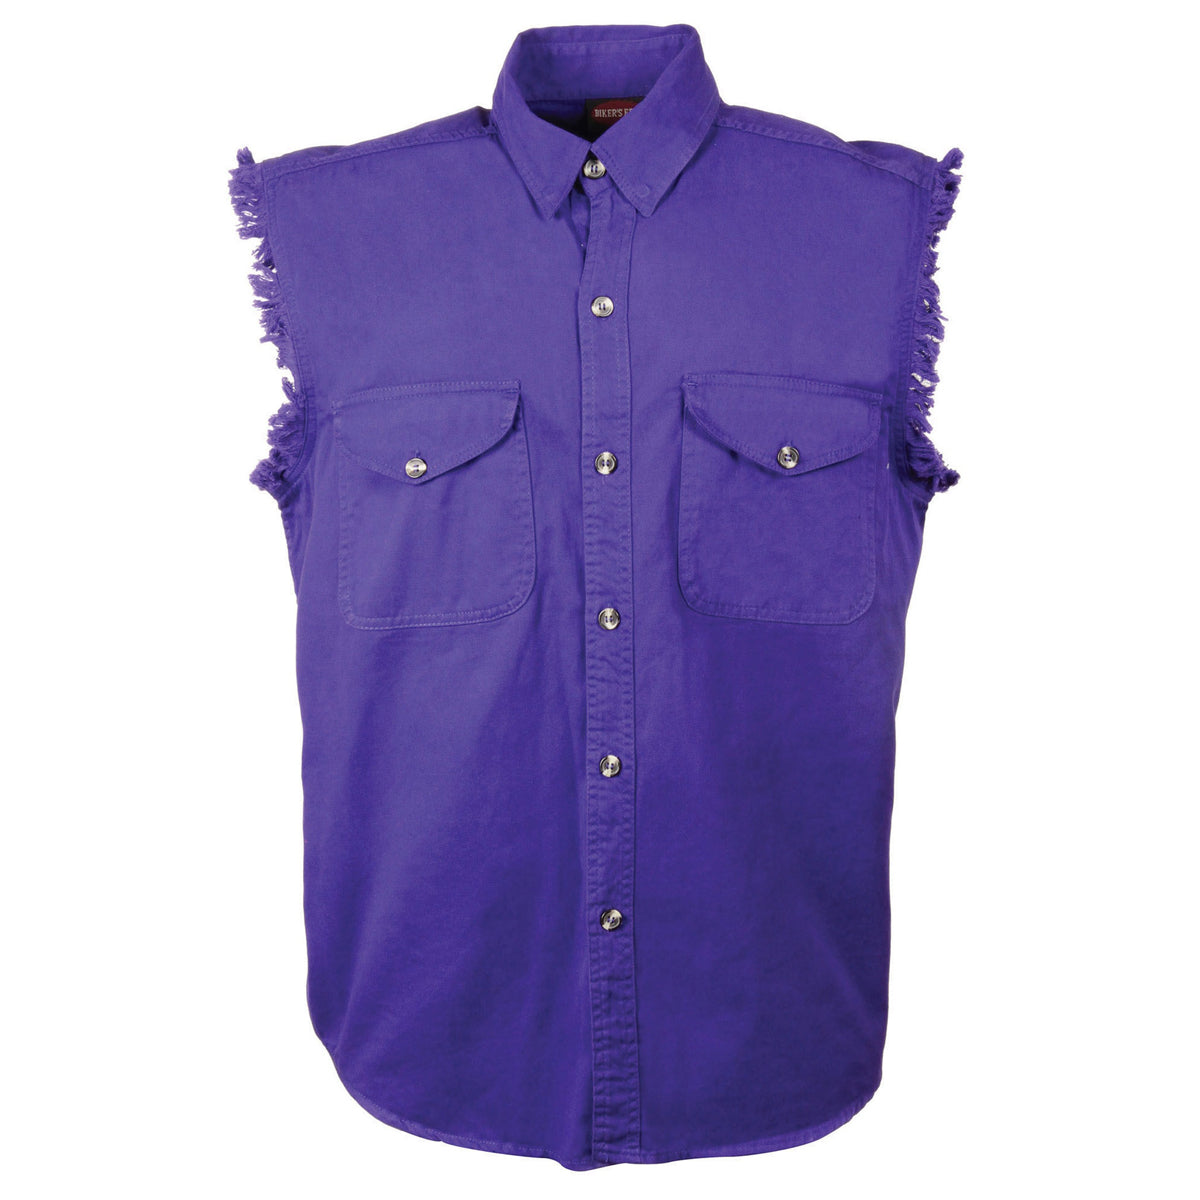 Men’s Purple Lightweight Sleeveless Denim Shirt